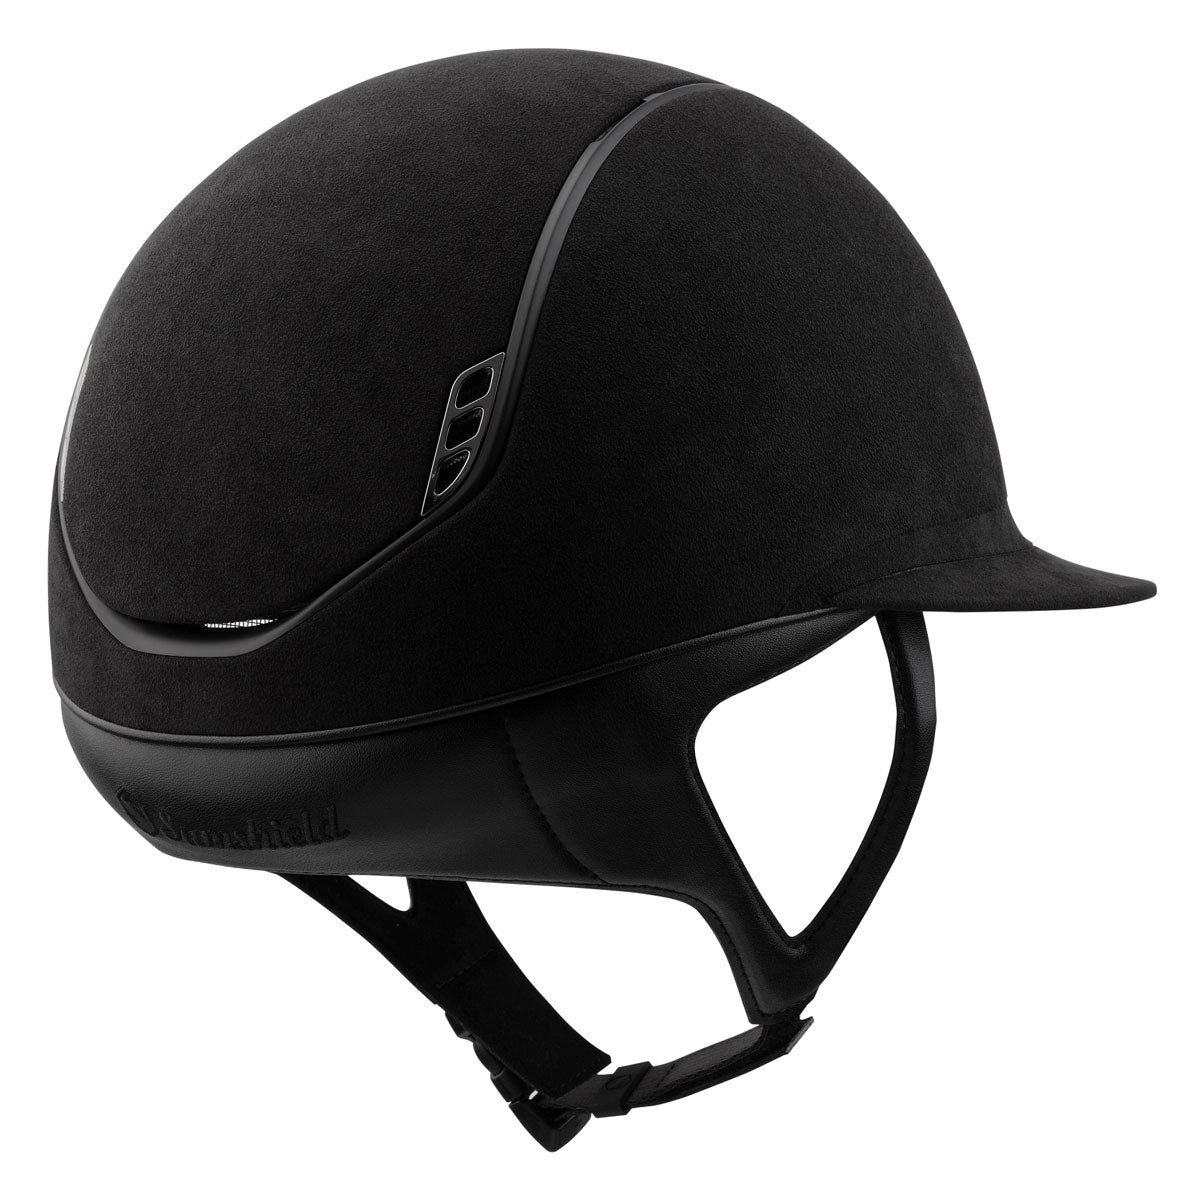 Samshield 2.0 Miss Shield Helmet - Premium